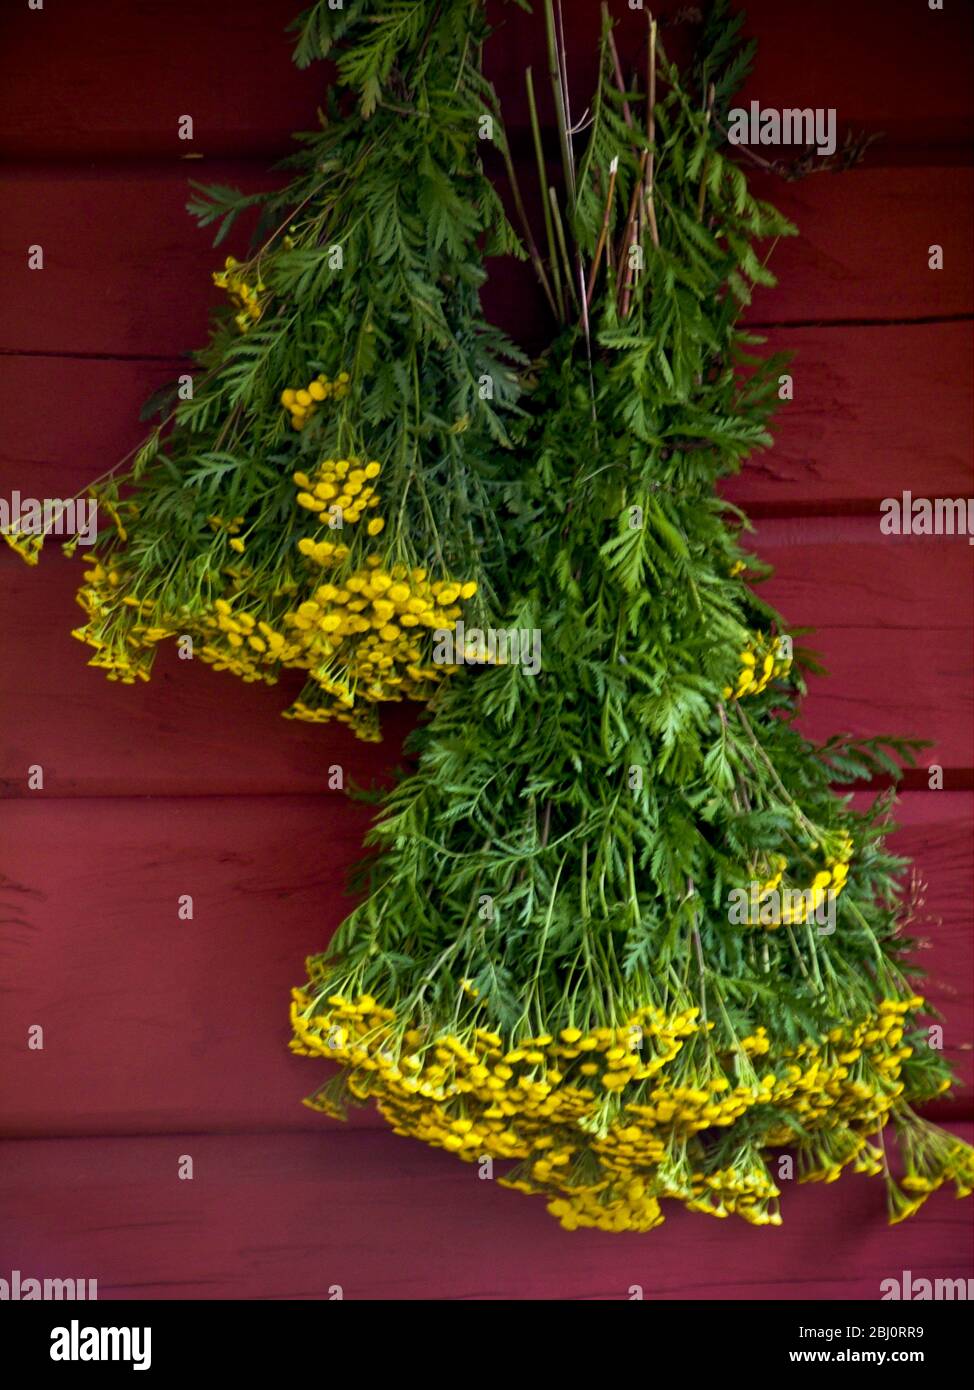 Manojo de yarrow amarillo colgando en la pared roja de la casa de verano de madera pintada de rojo falu, Suecia. - Foto de stock